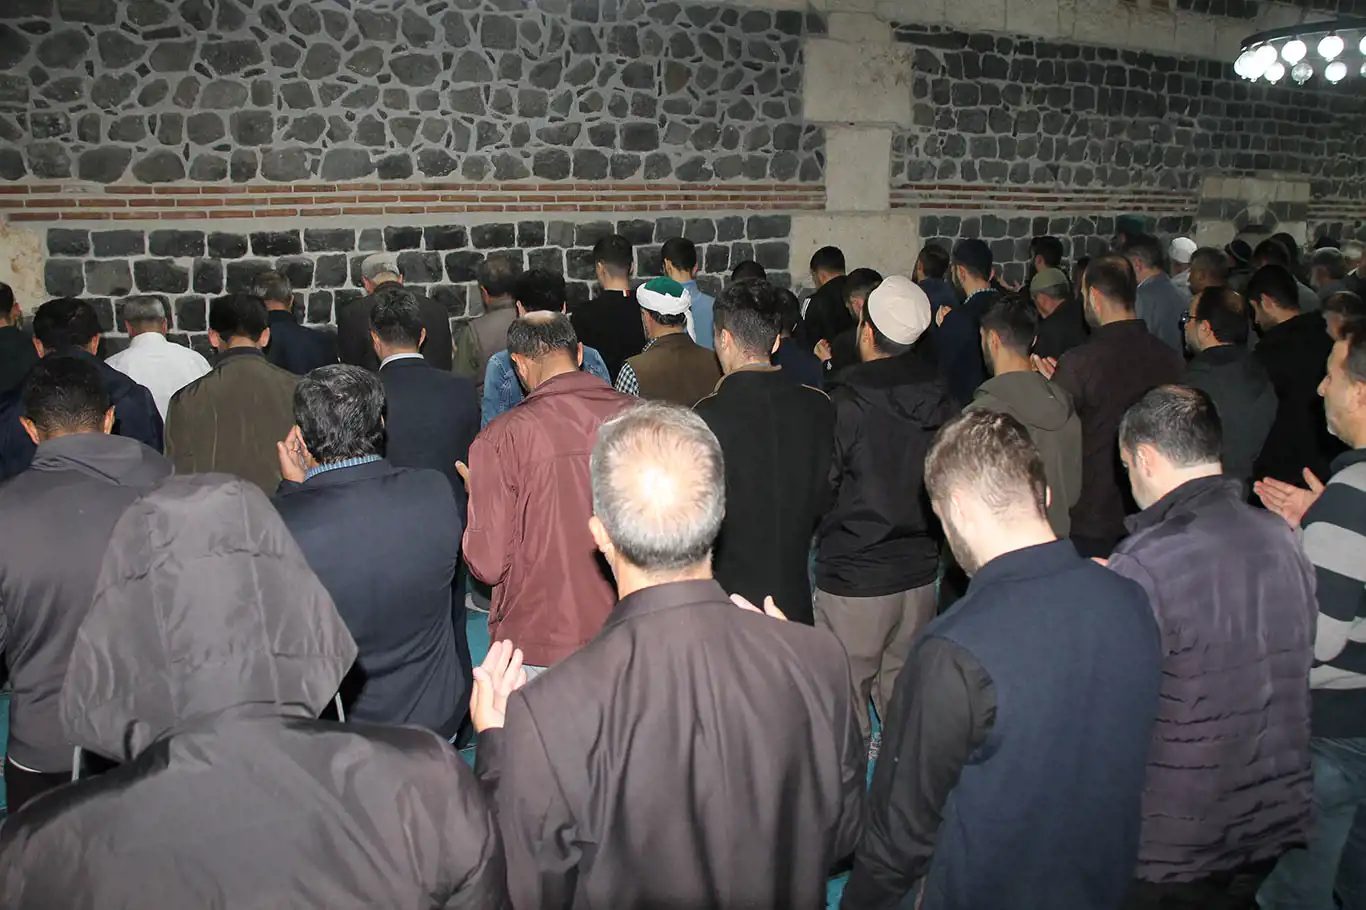 Diyarbakırlılar "Filistin'e dua" nöbetini sürdürüyor